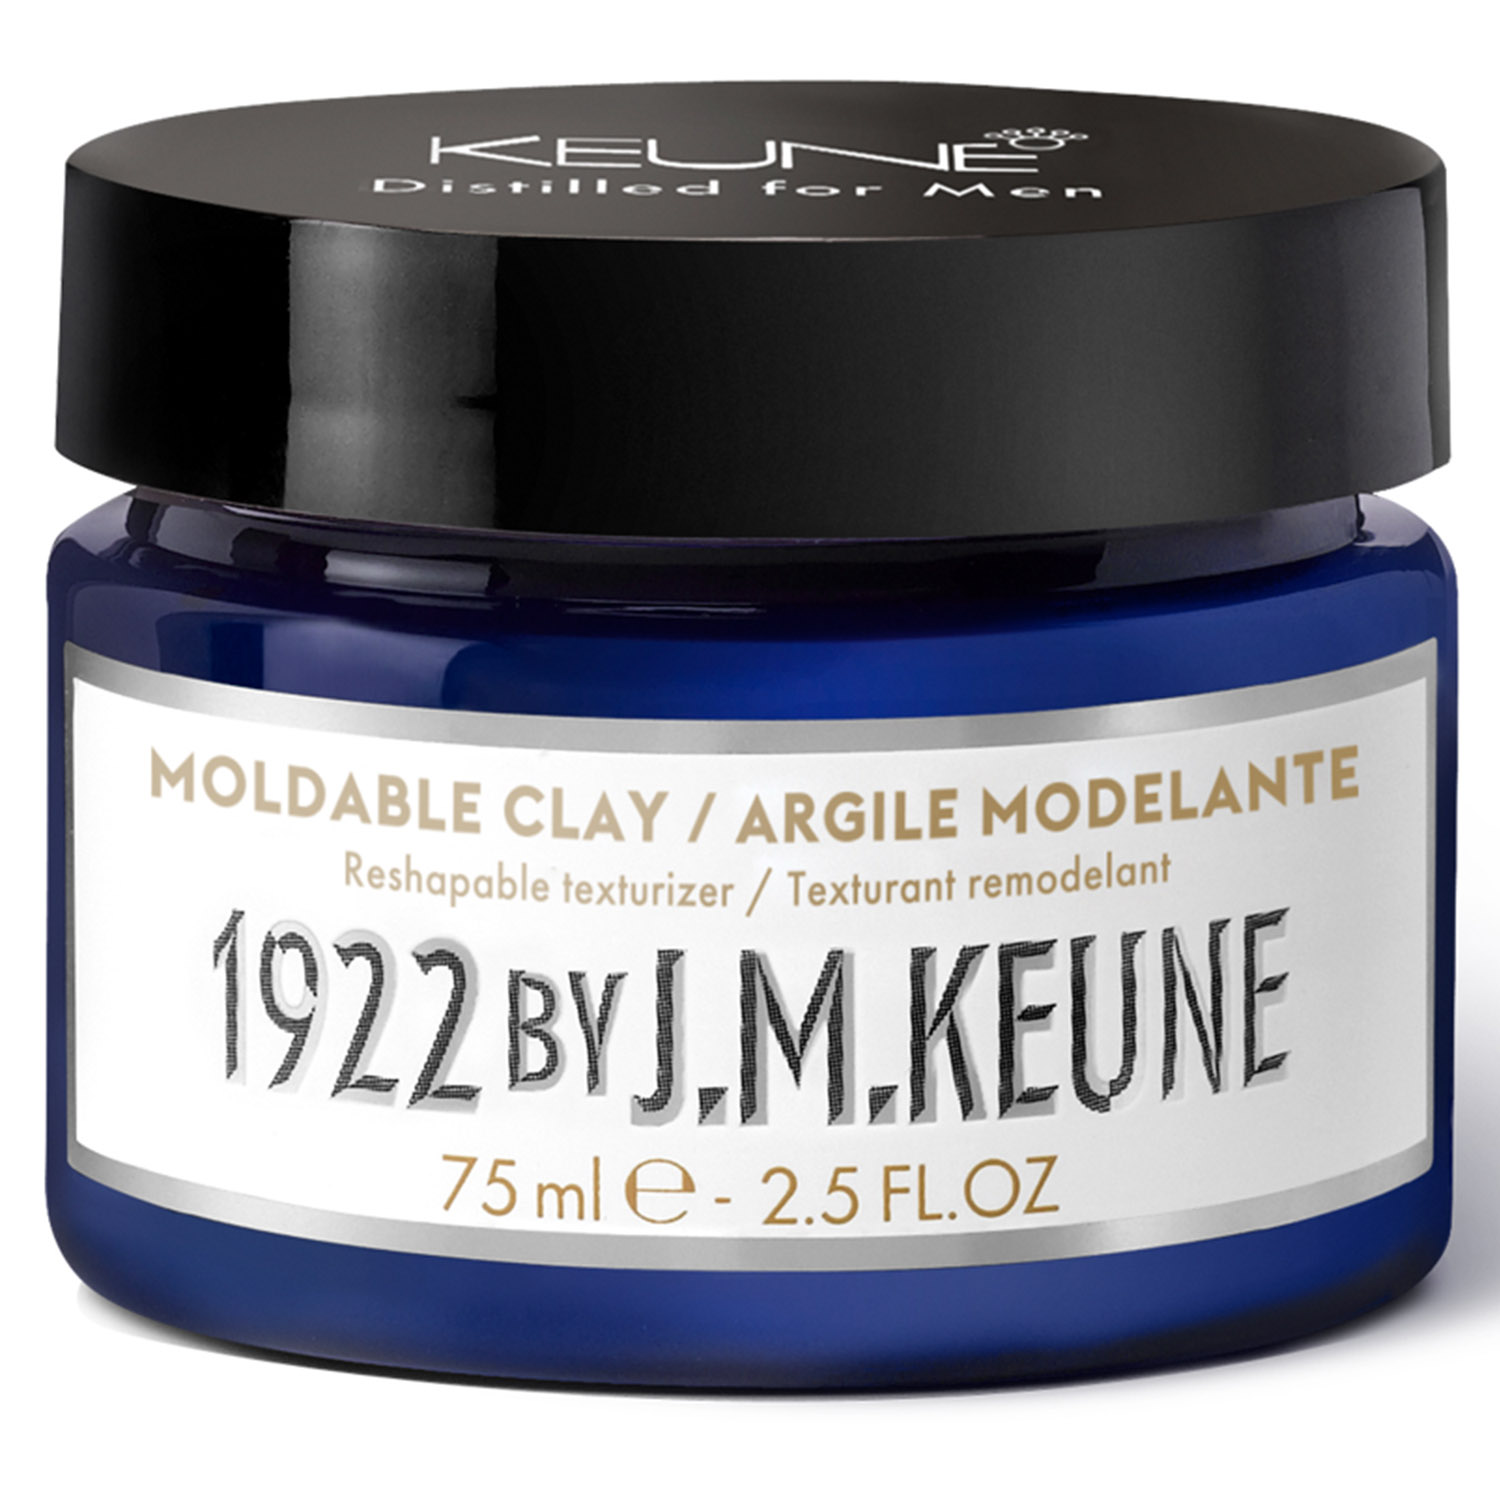 Keune Моделирующая глина для укладки волос Moldable Clay, 75 мл (Keune, 1922 by J.M. Keune) keune 1922 by j m keune кондиционер для волос refreshing 250 мл